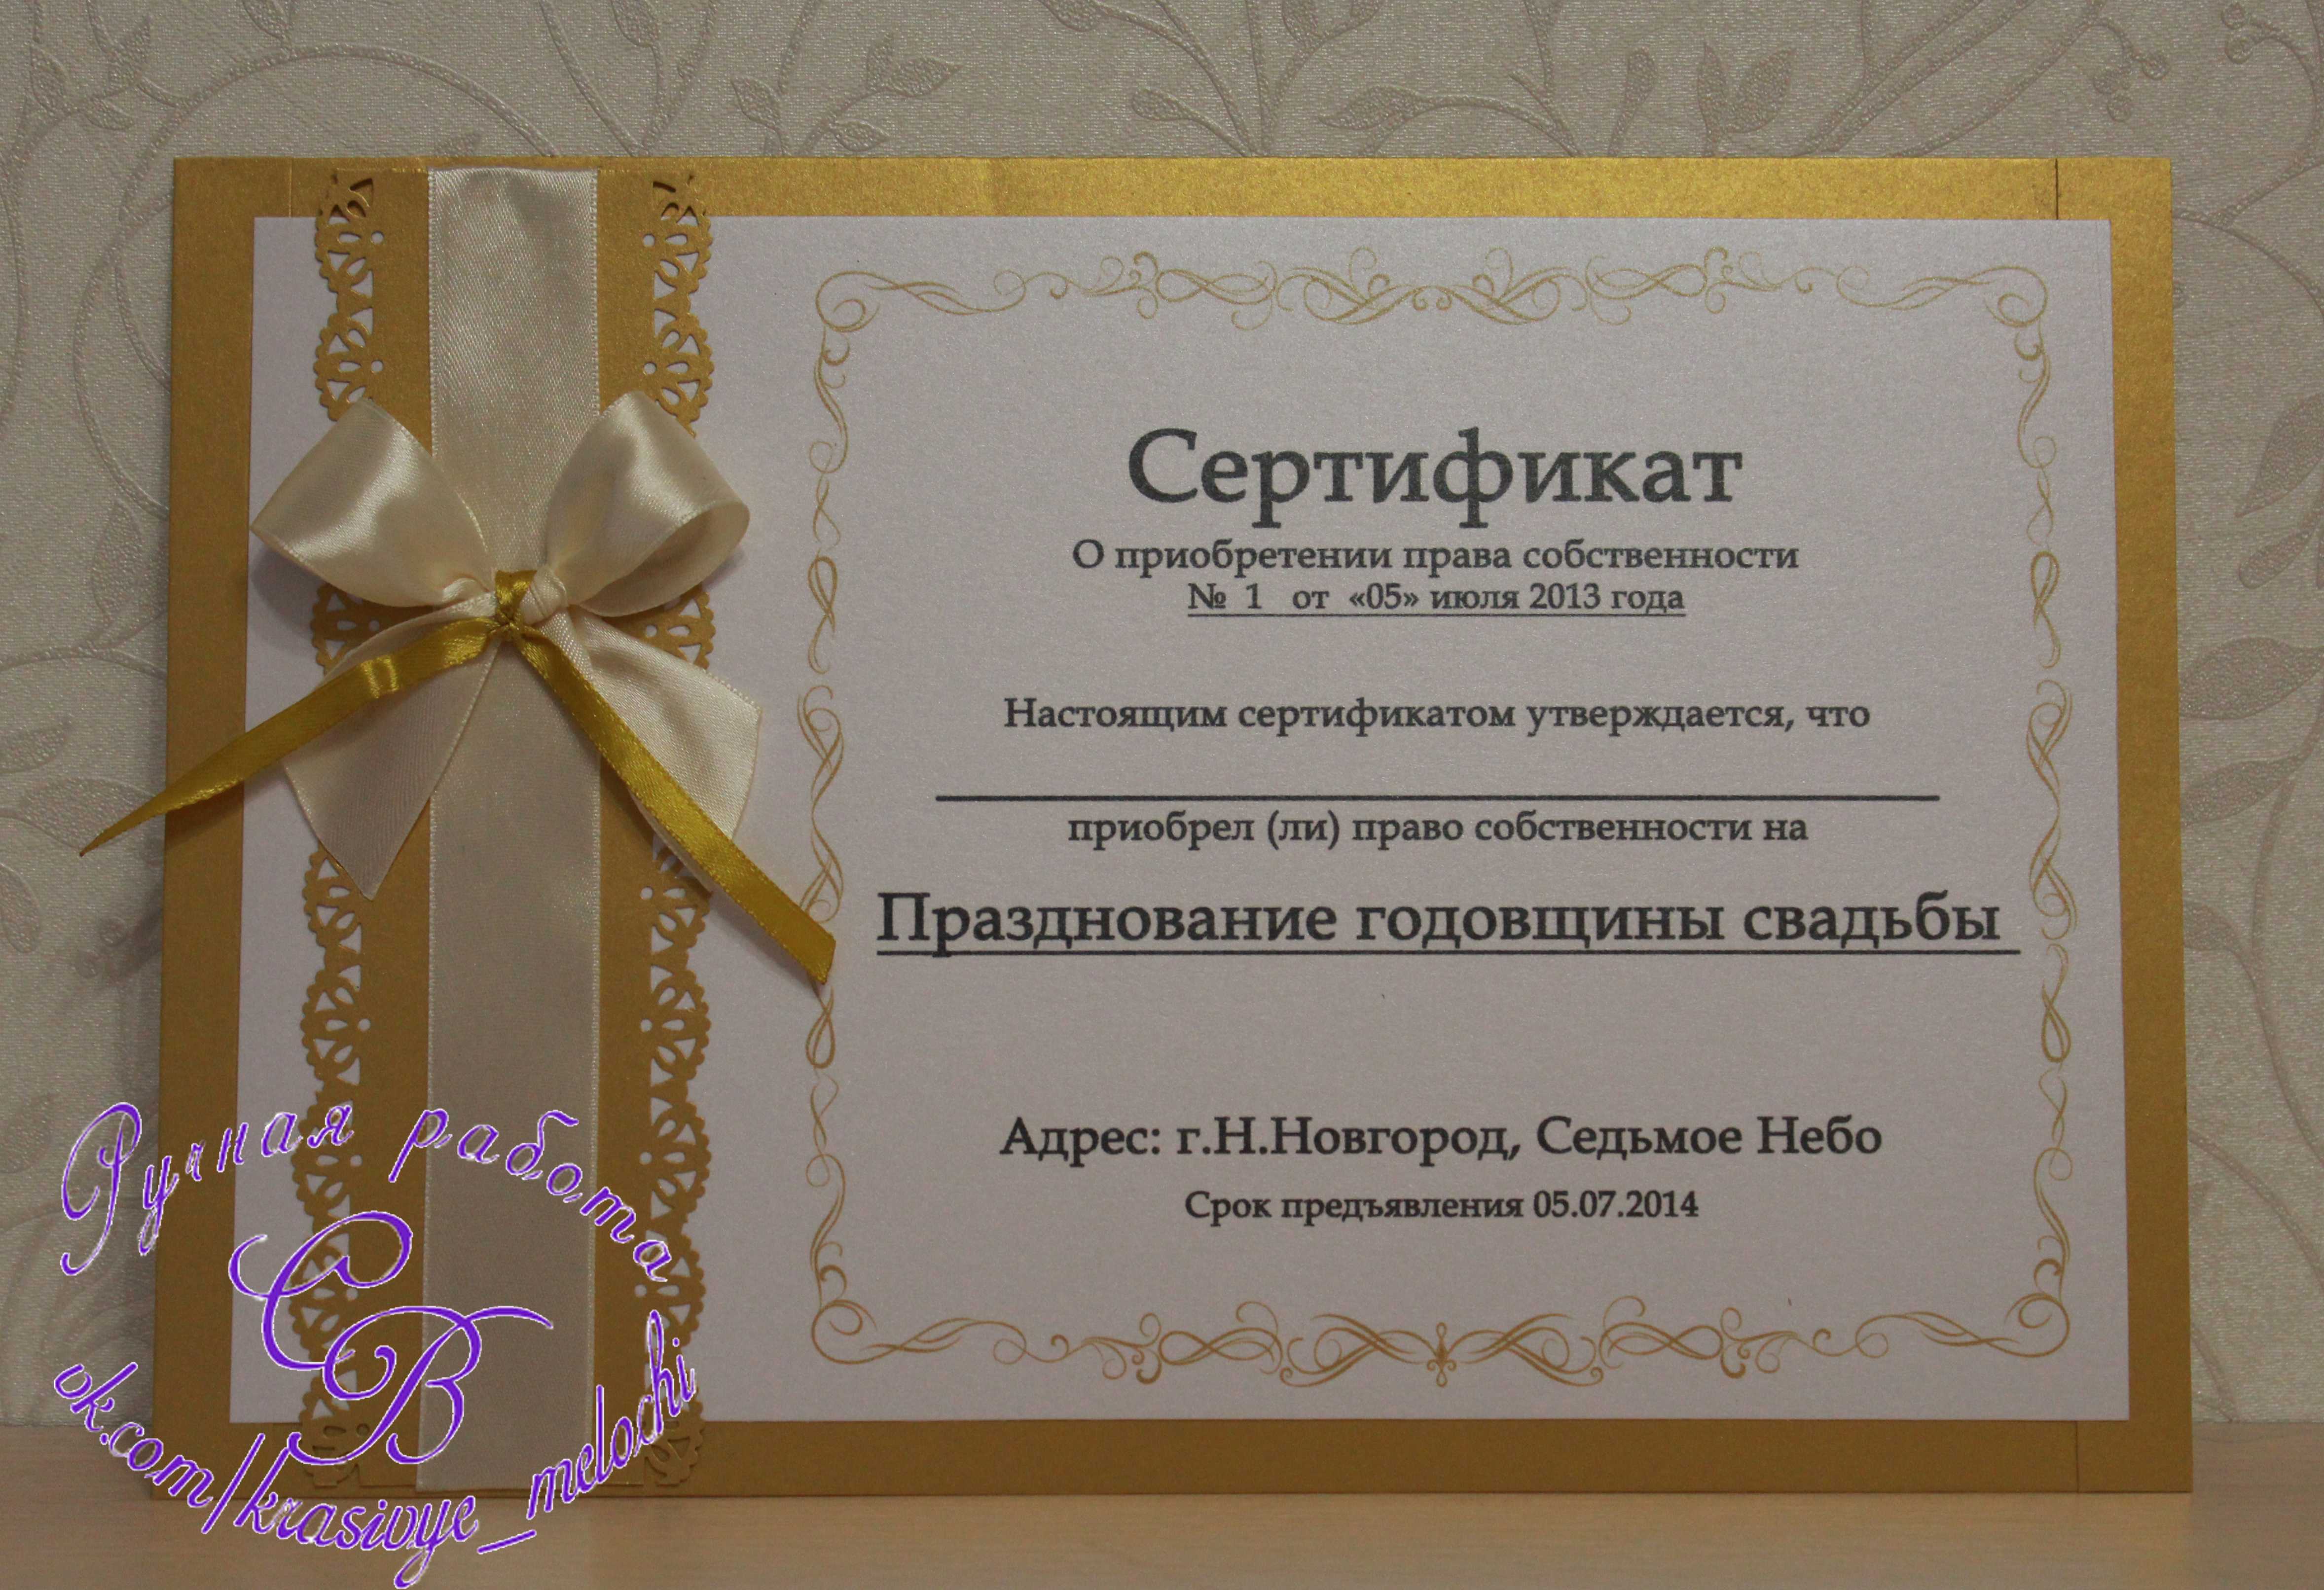 Какой сертификат можно подарить на день рождения. Подарочный сертификат на свадьбу. Сертификат на свадьбу в подарок. Сертификат подарочный для молодоженов на свадьбу. Шуточные подарочные сертификаты на свадьбу.